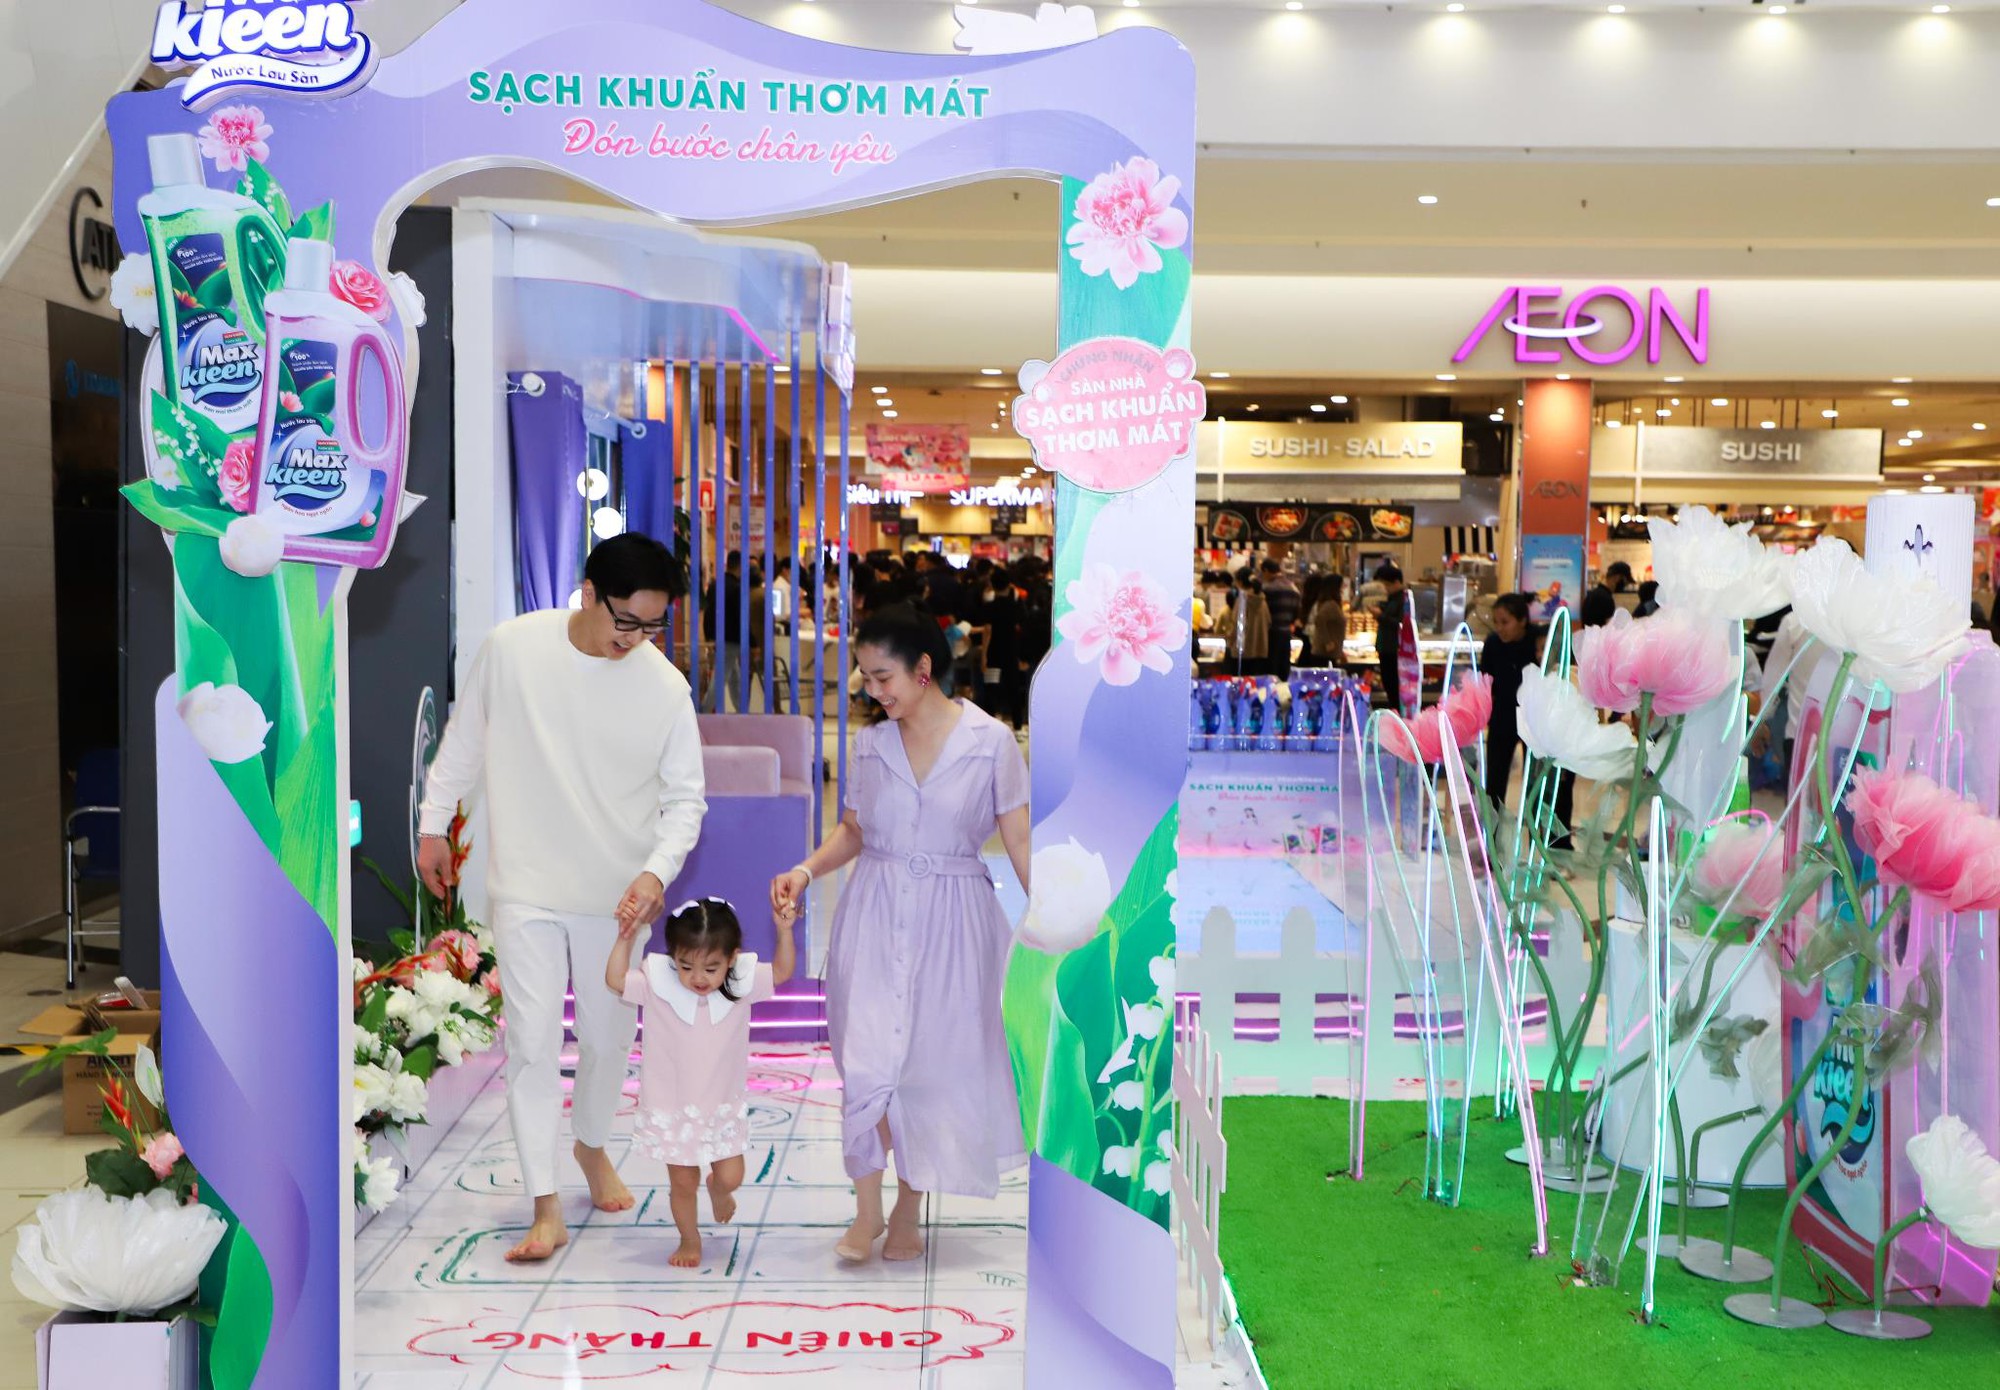 Đi chân trần trong mall: Nước lau sàn MaxKleen mang đến trải nghiệm “độc lạ” với sự tham gia của các gia đình nổi tiếng - Ảnh 6.